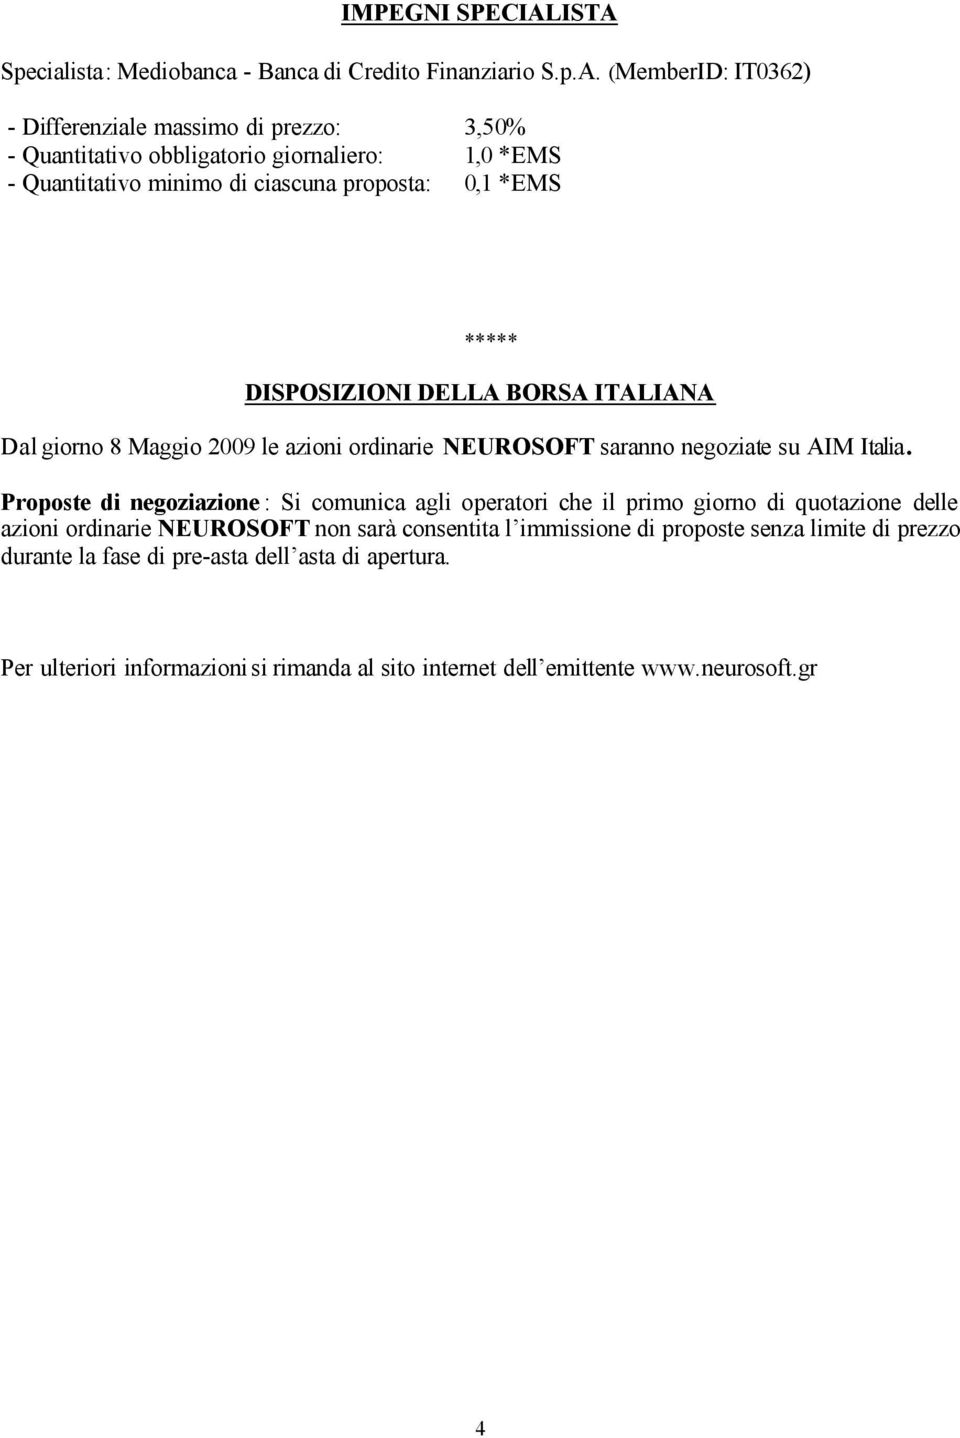 1,0 *EMS - Quantitativo minimo di ciascuna proposta: 0,1 *EMS ***** DISPOSIZIONI DELLA BORSA ITALIANA Dal giorno 8 Maggio 2009 le azioni ordinarie saranno negoziate su